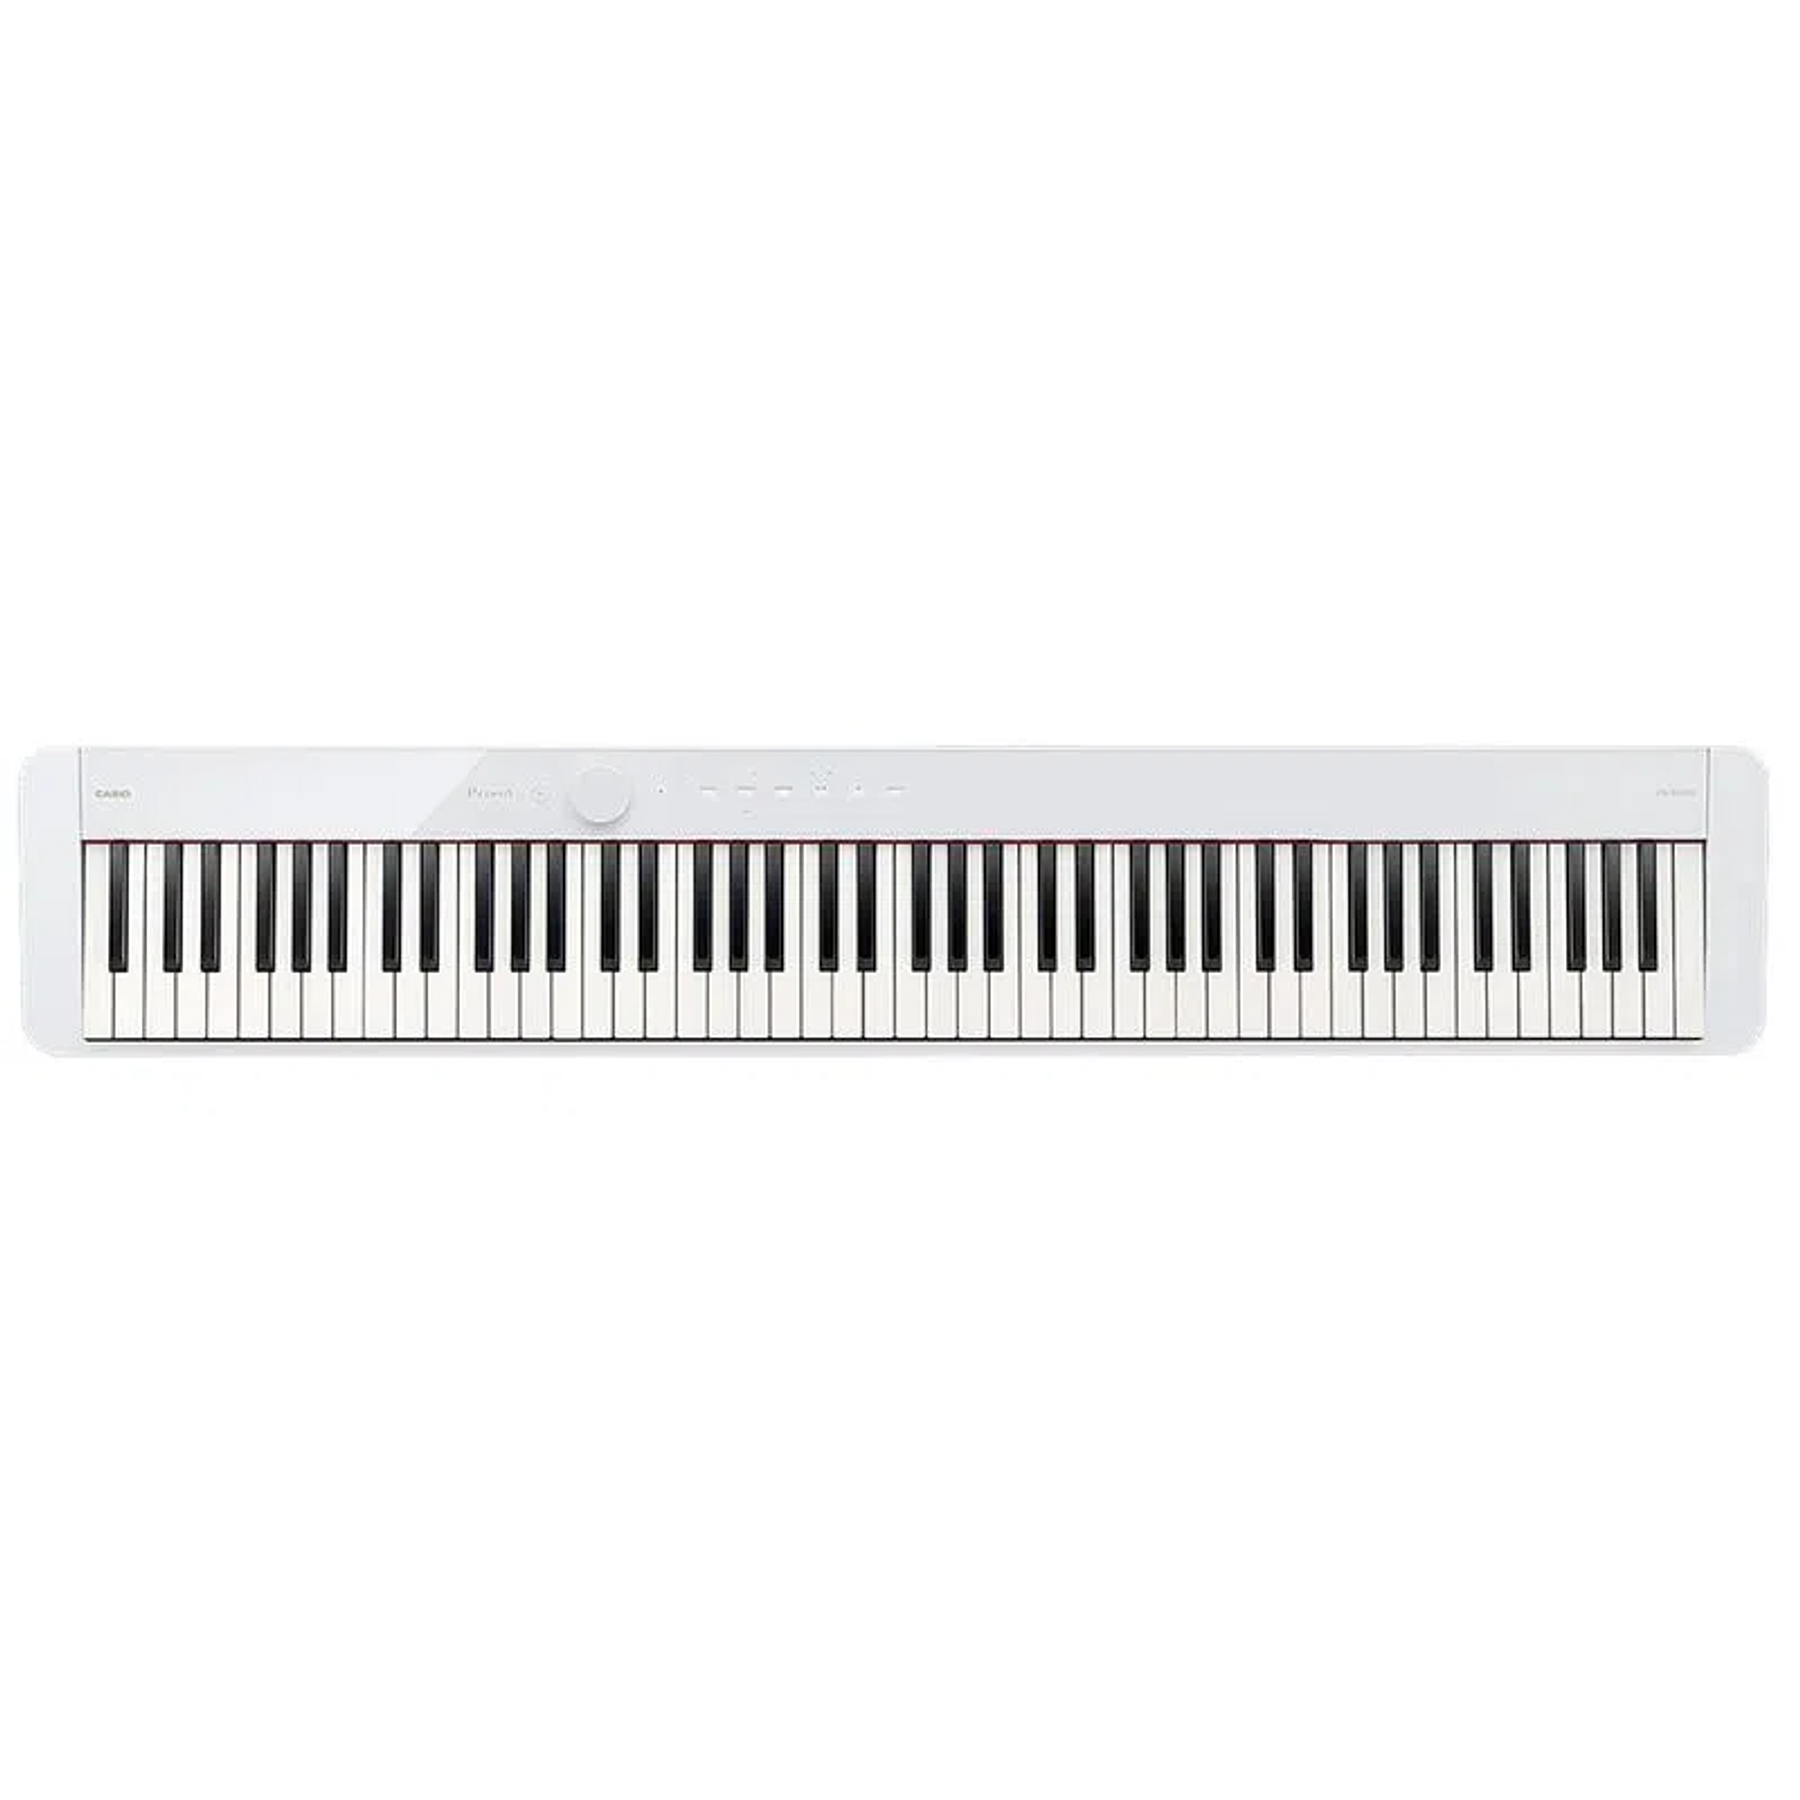 Piano Digital Casio Privia PX-S1100 Blanco, 88 teclas